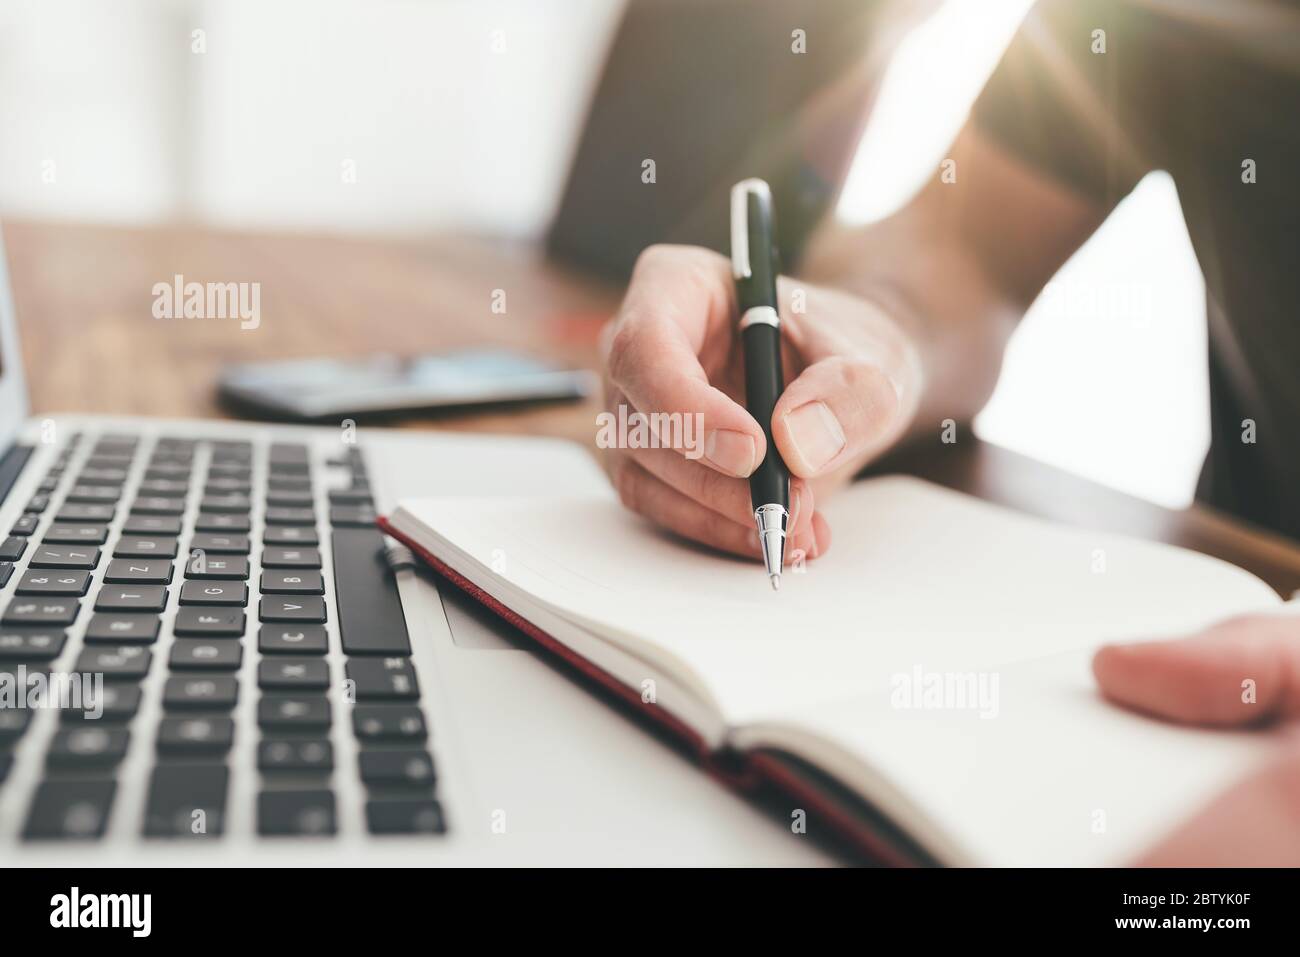 primo piano di una persona che prende appunti con la penna sulla carta davanti al computer portatile Foto Stock